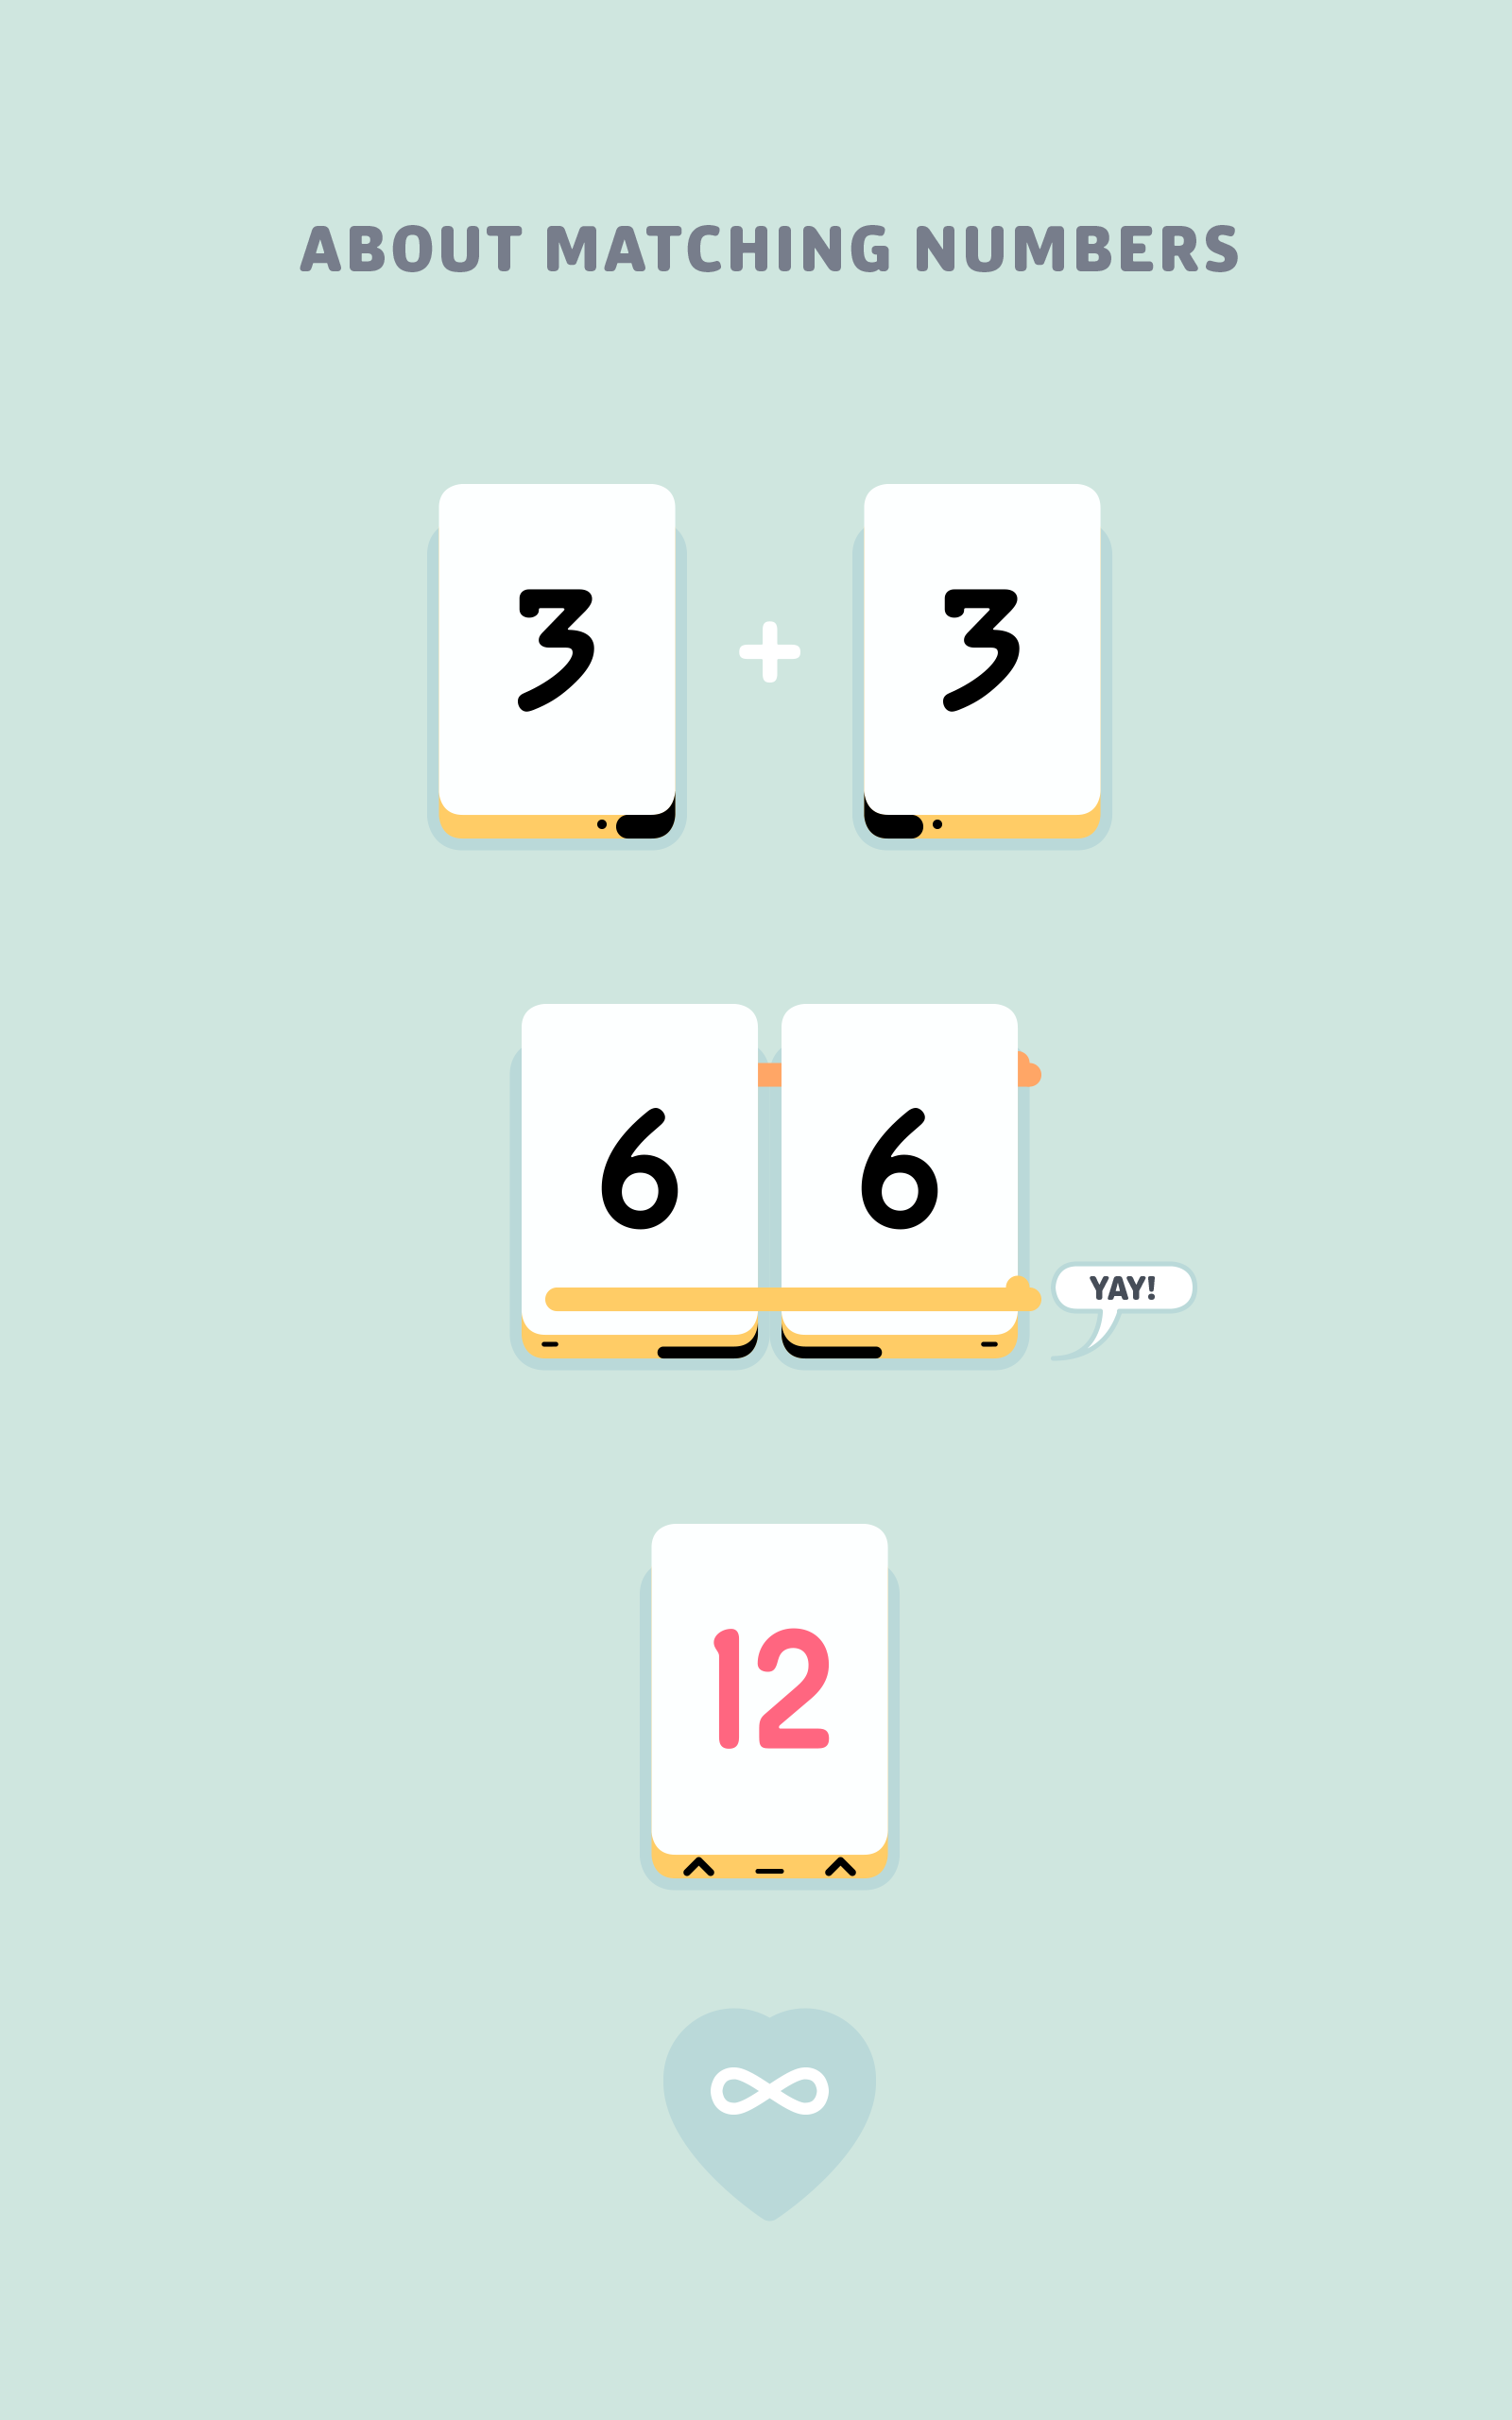 Threes! screenshot game